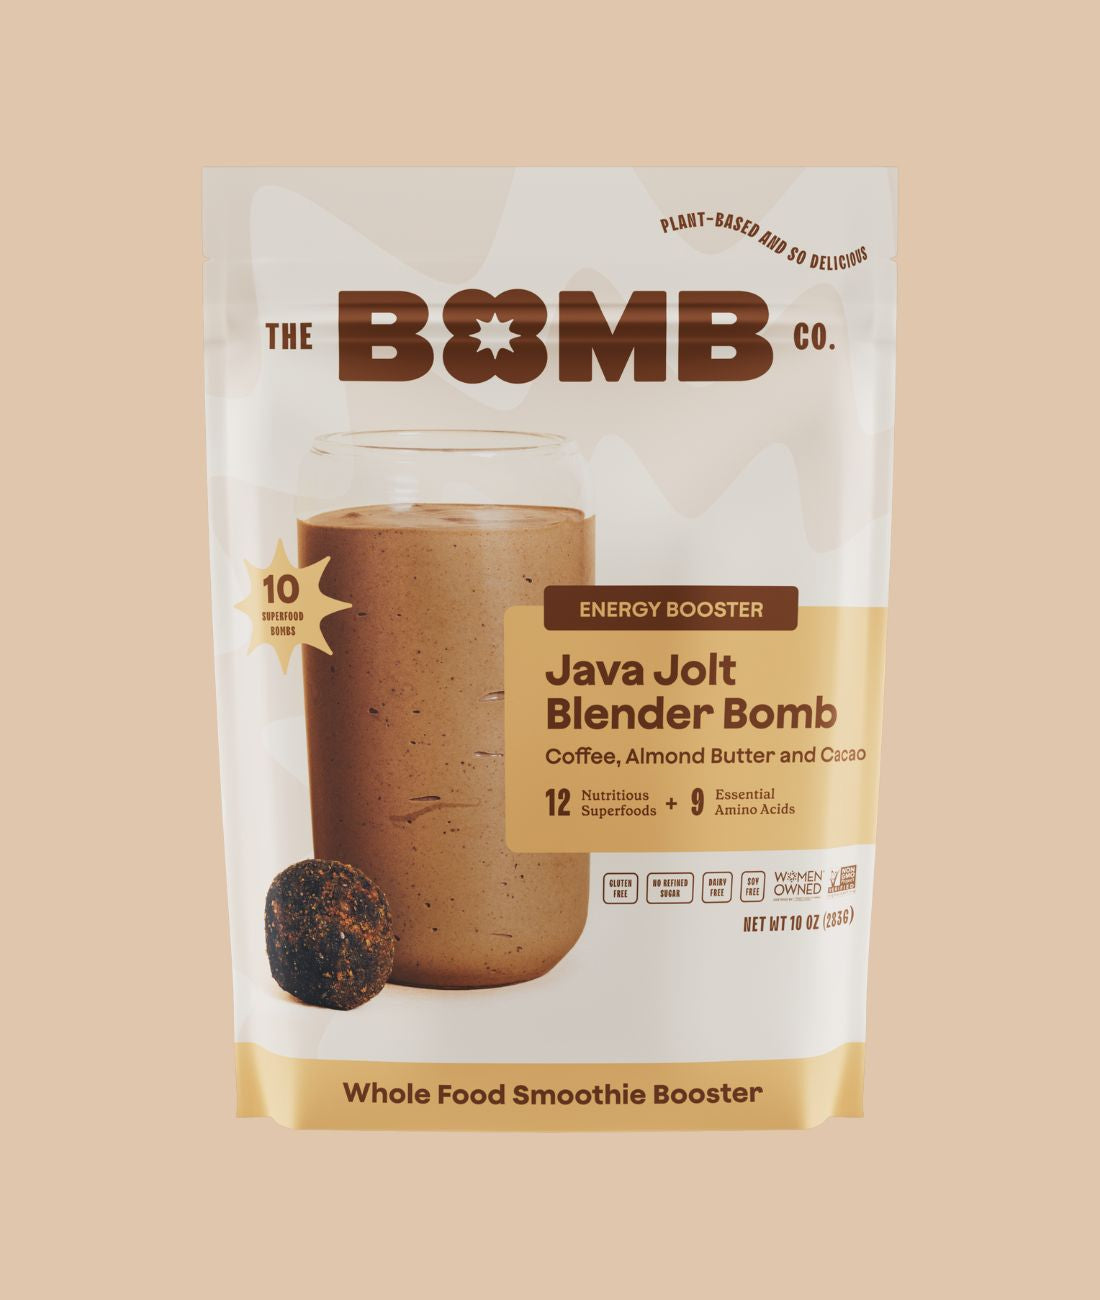 Blender Bombs Bomb Bar: Peanut Butter & Jelly Case (9 Bars) Plant-Based Nutrition Bar